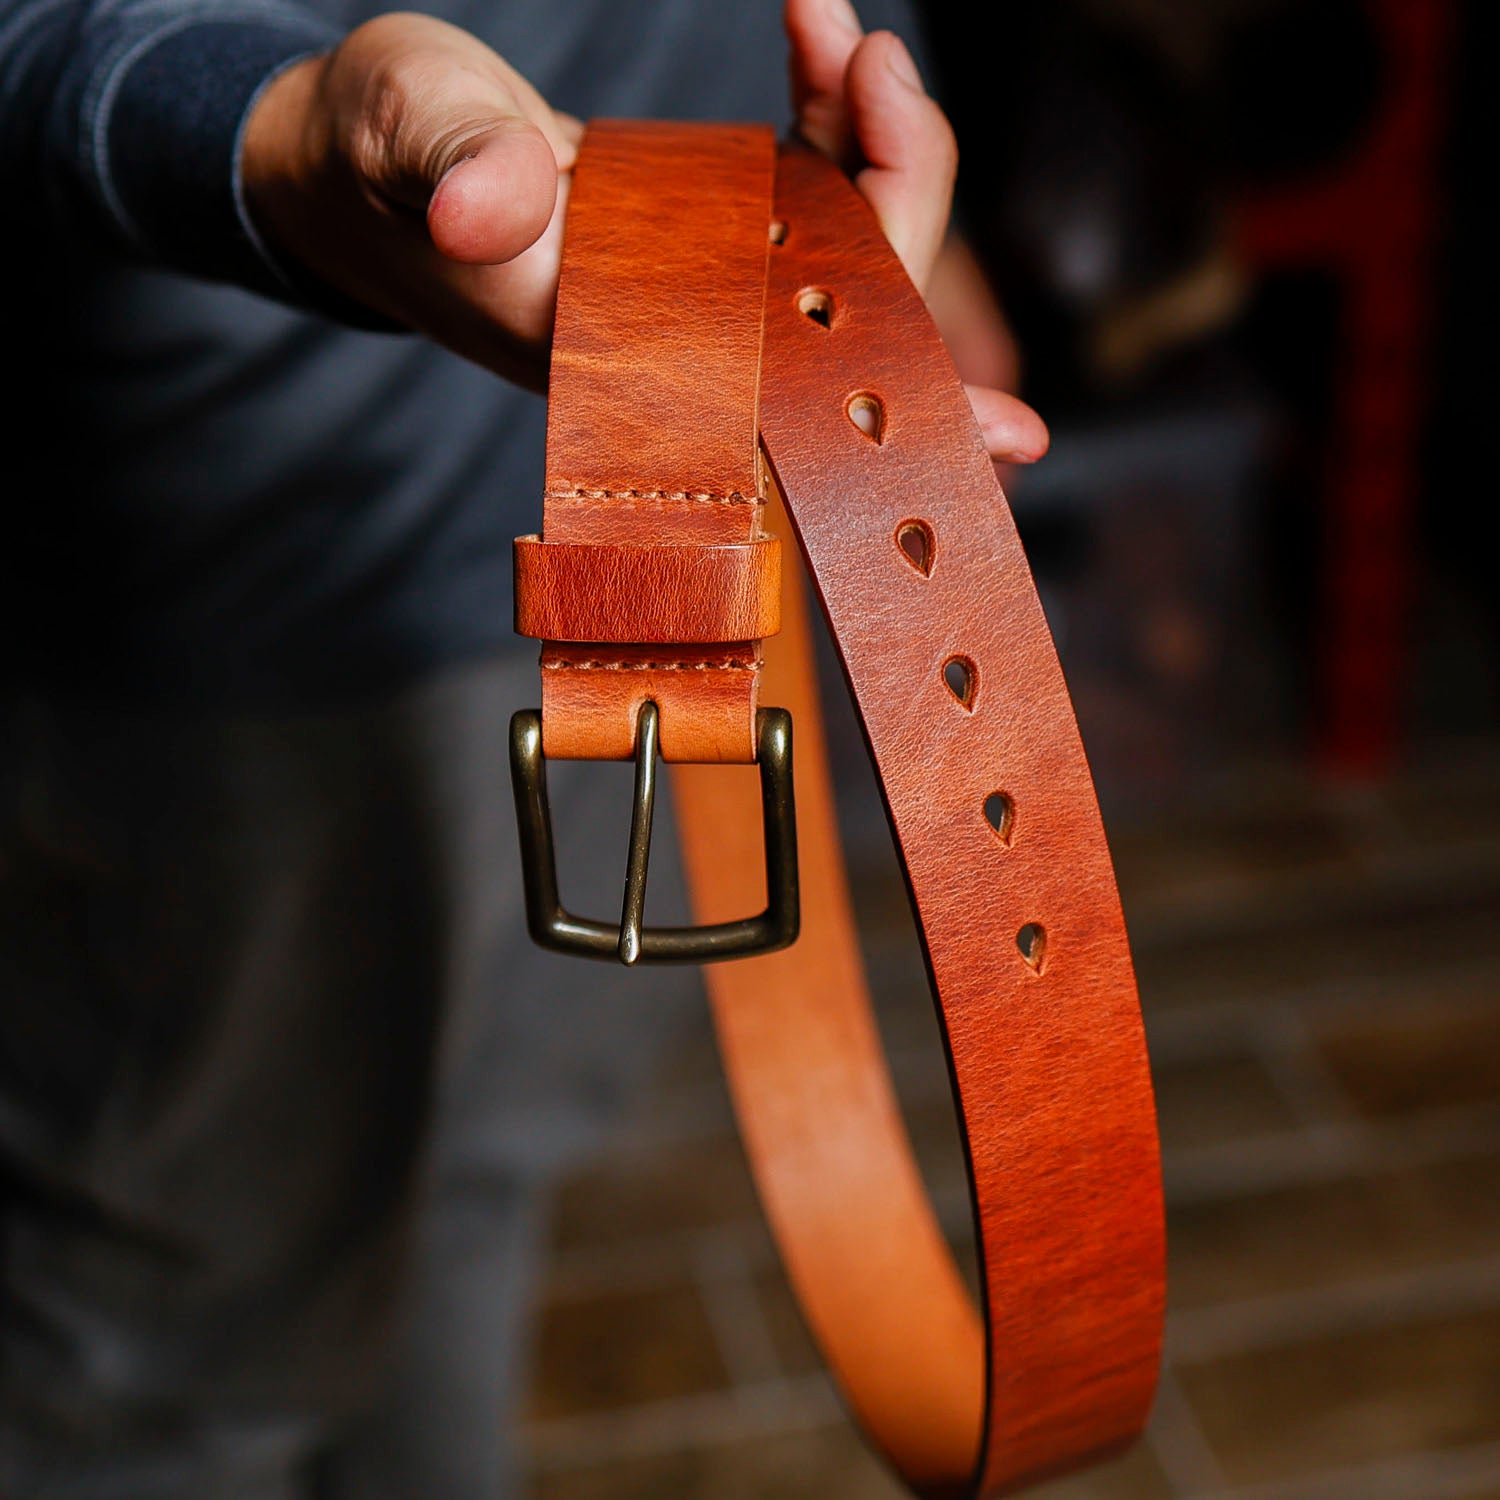 Ashland Leather Co. Men's Horween Leather Belt